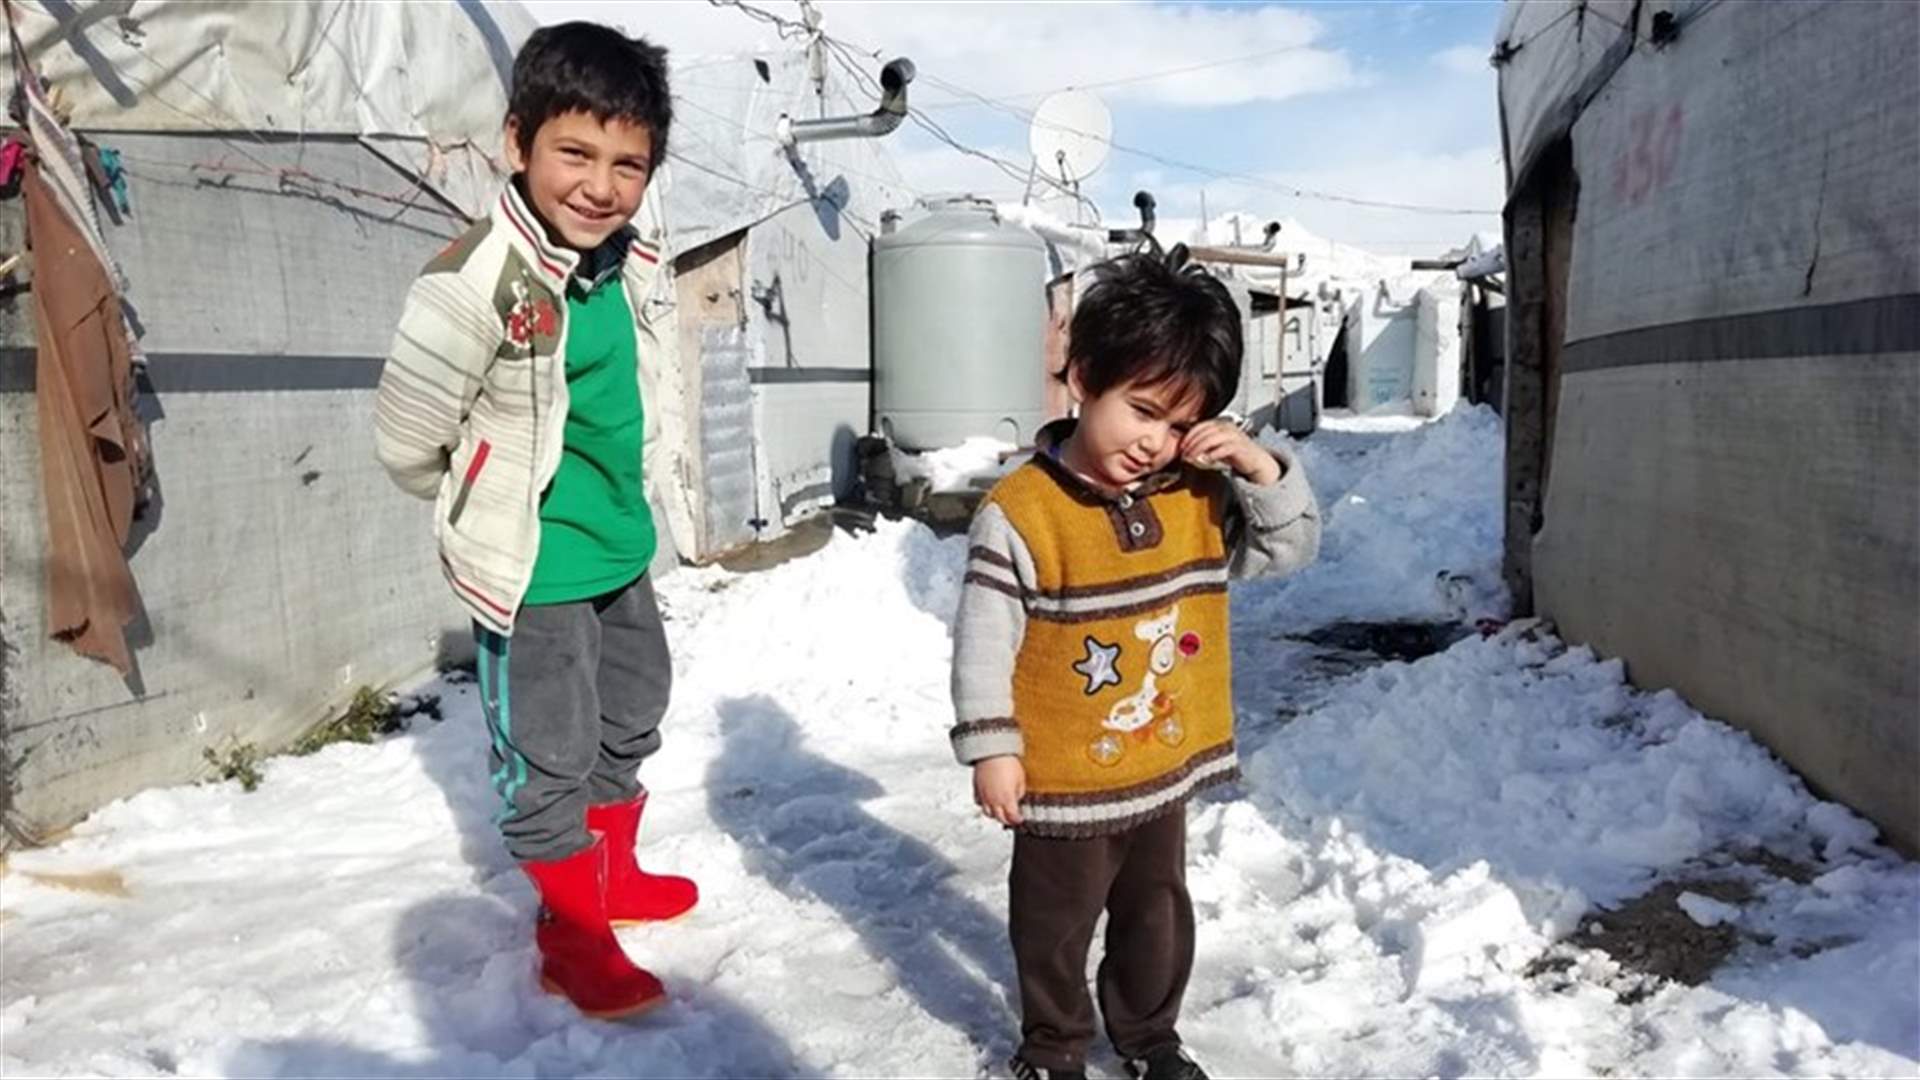 وفاة 15 طفلاً نازحاً في سوريا جراء البرد القارس